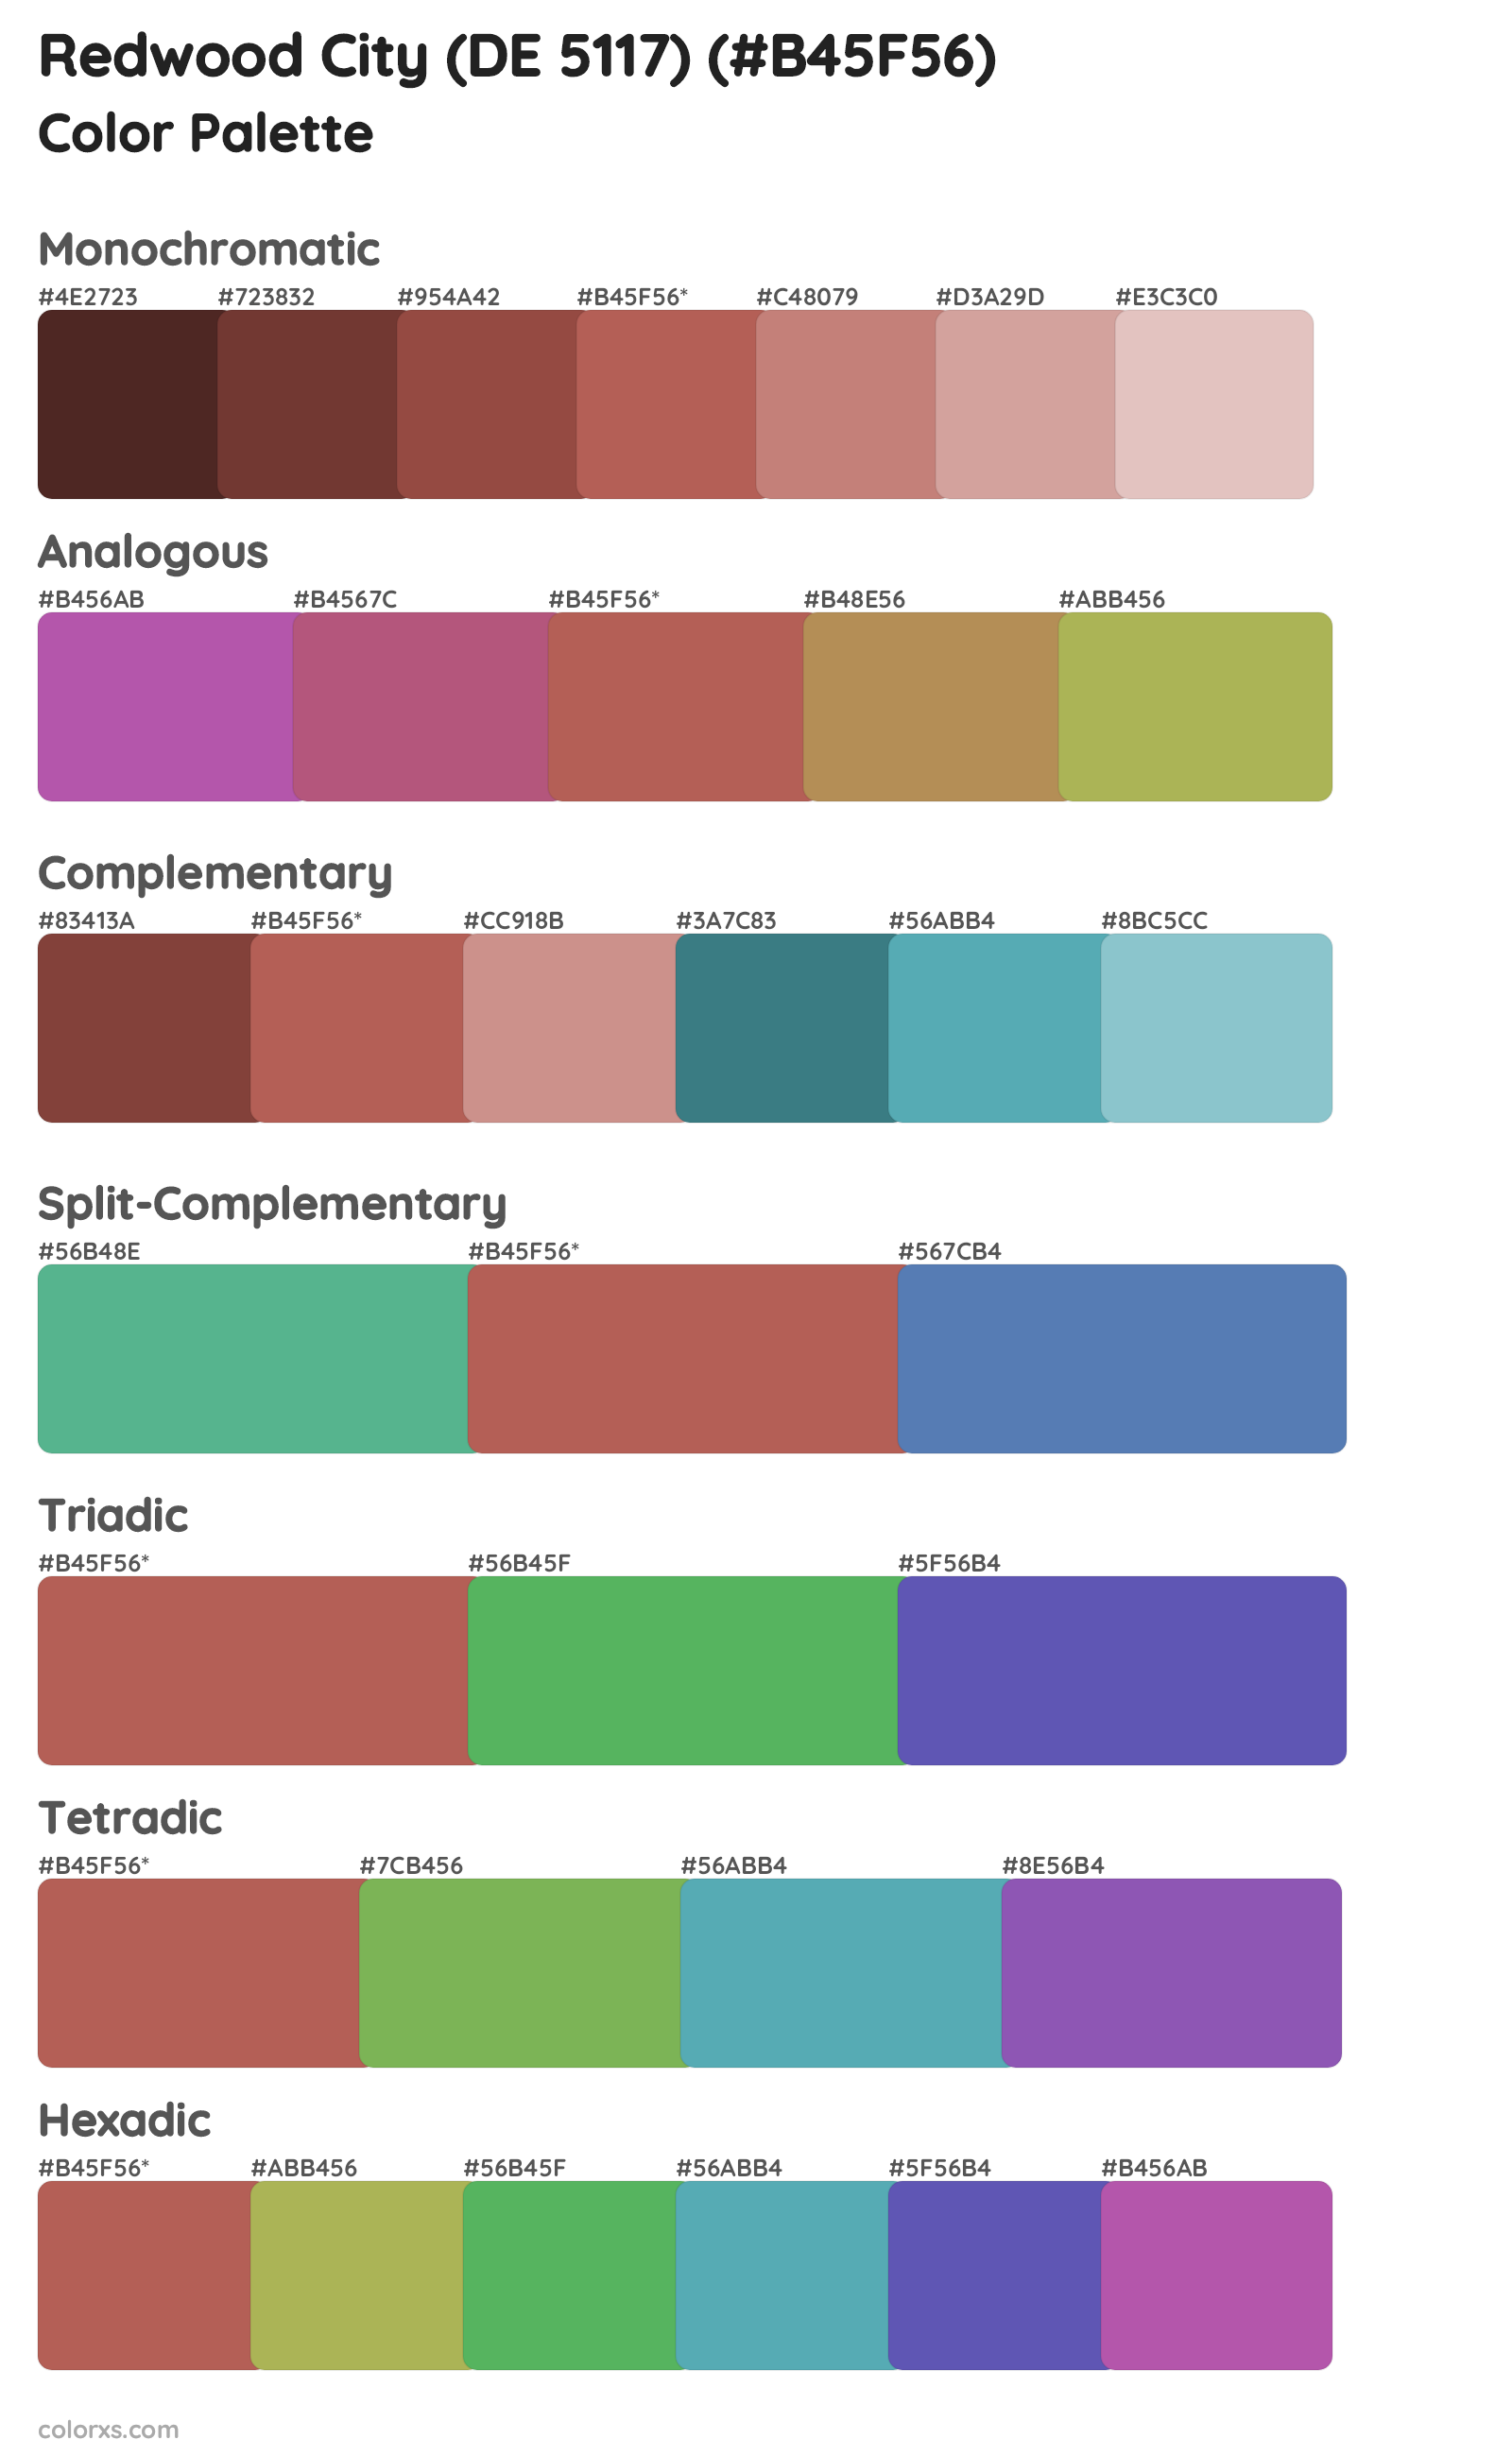 Redwood City (DE 5117) Color Scheme Palettes